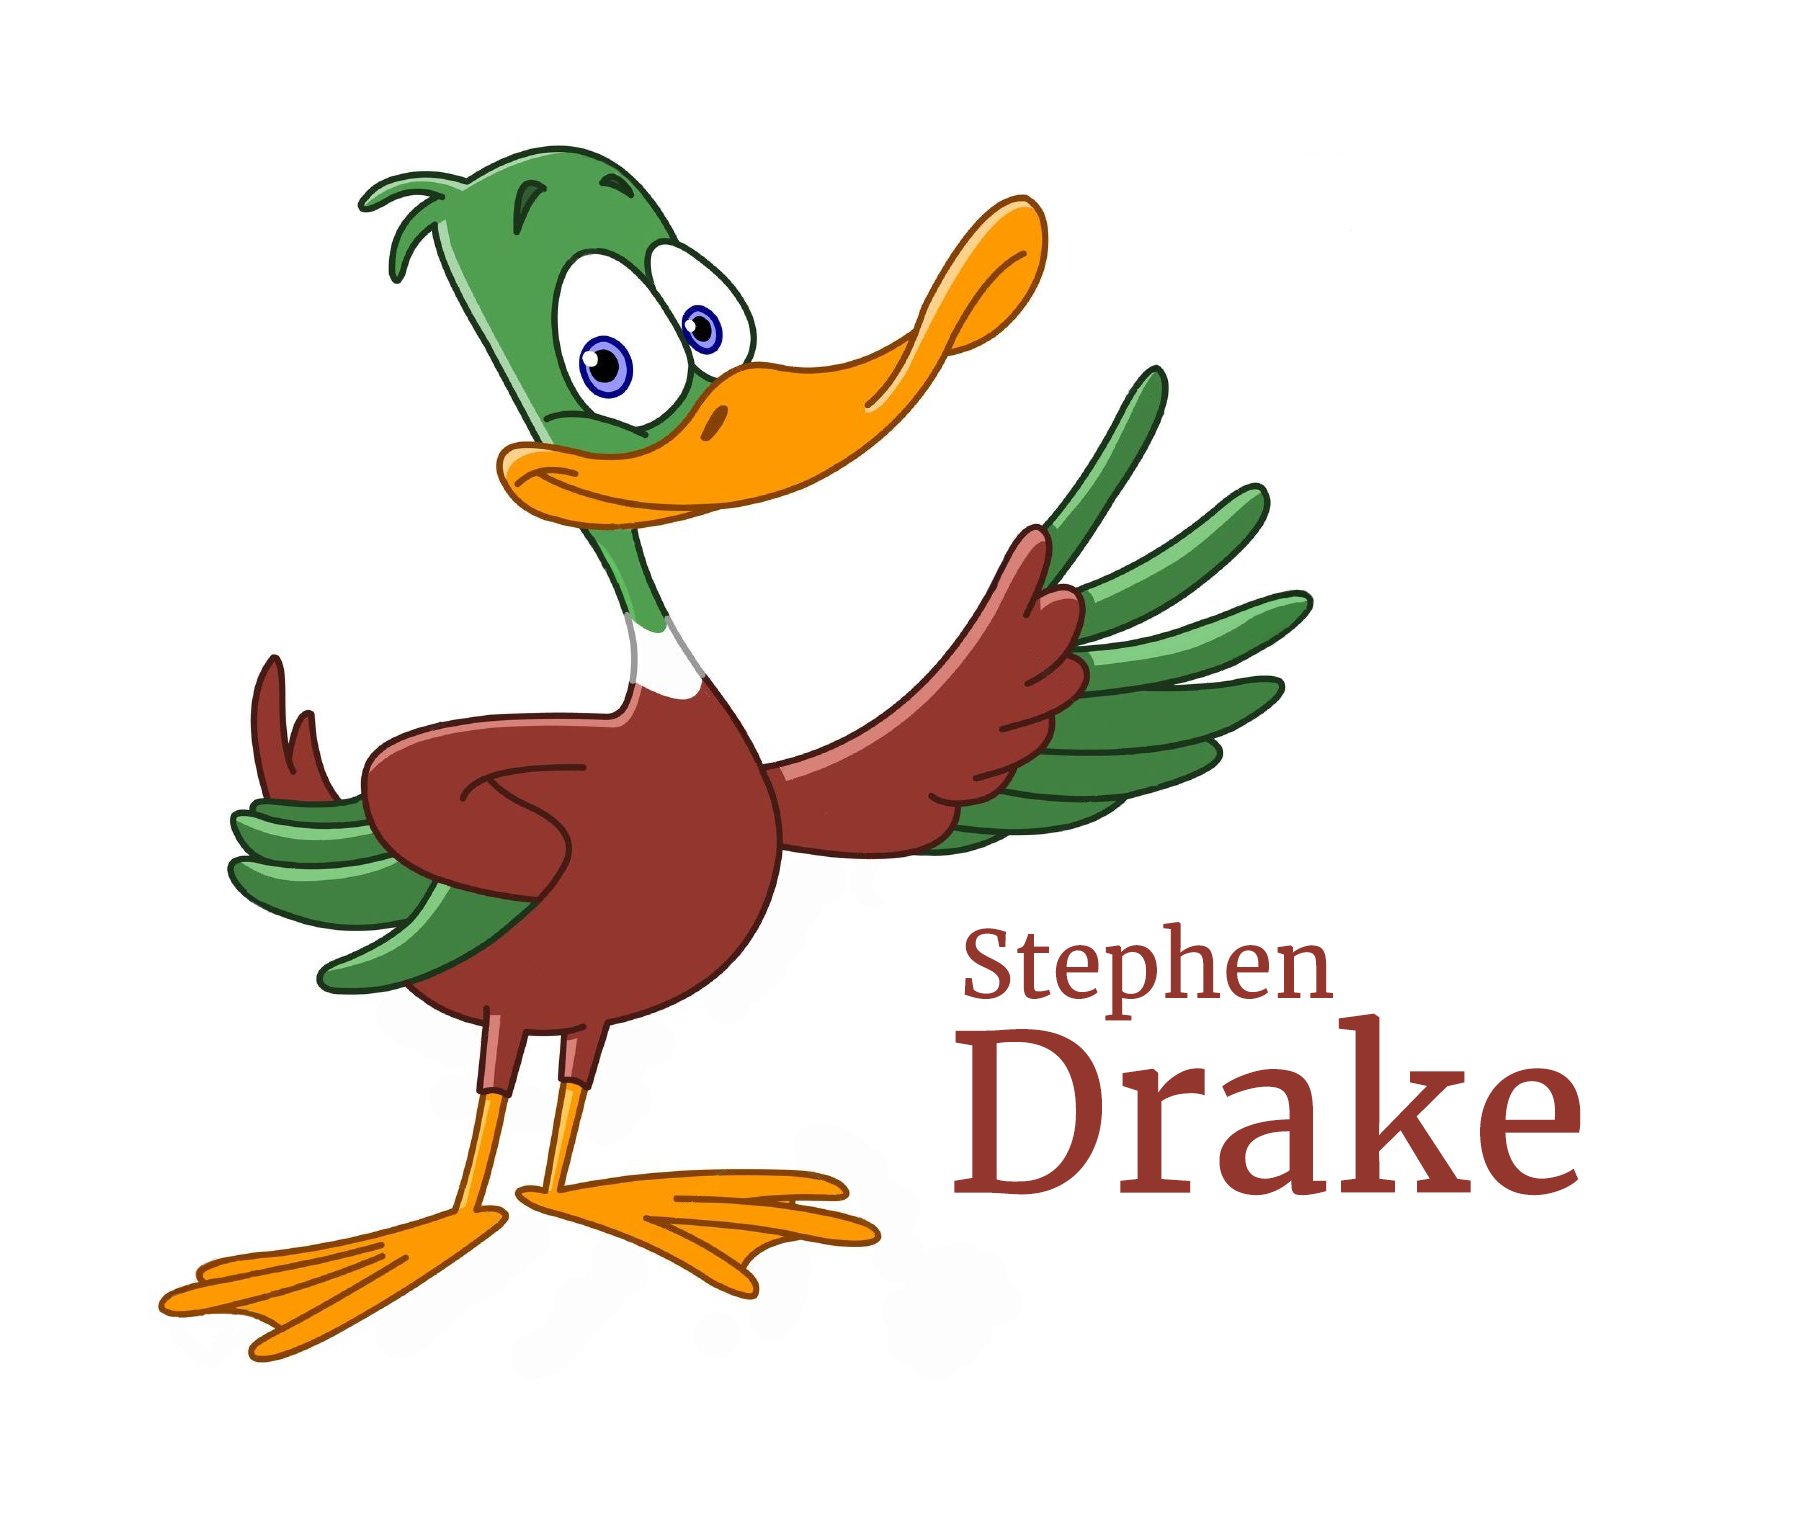 Stephen Drake